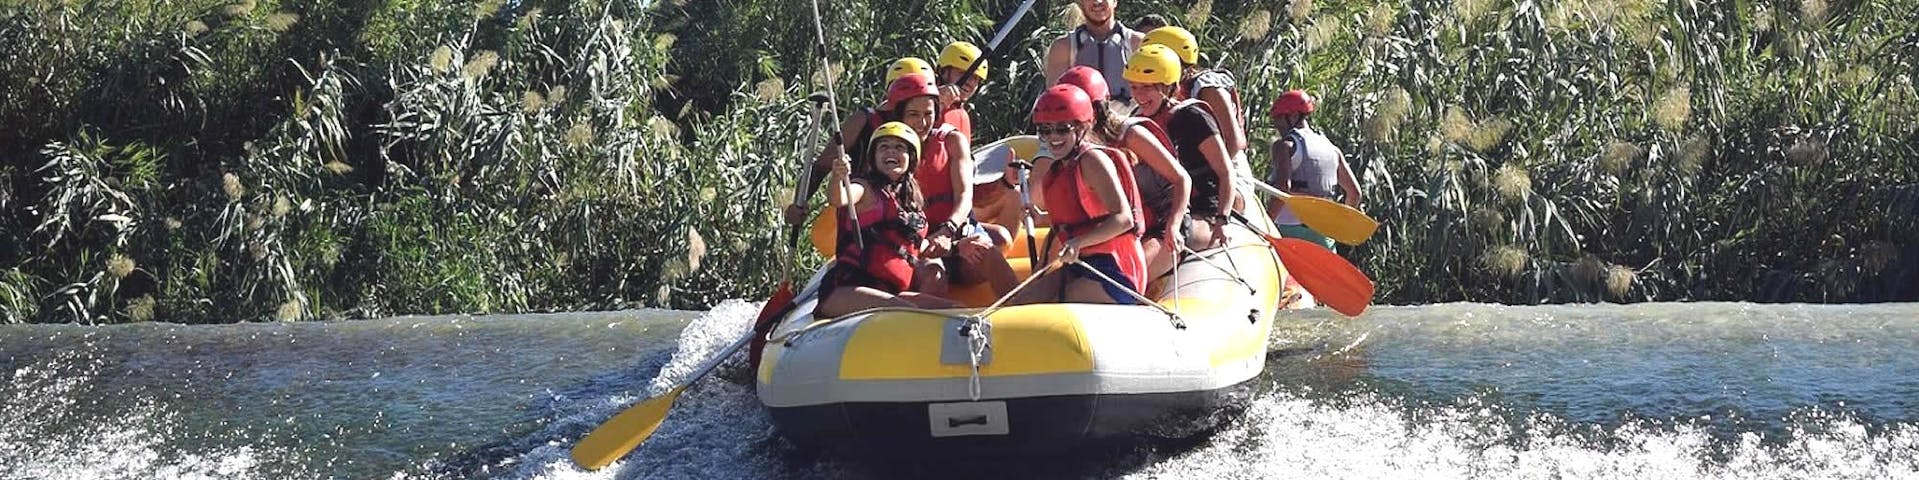 Rafting clásico en el Río Segura.